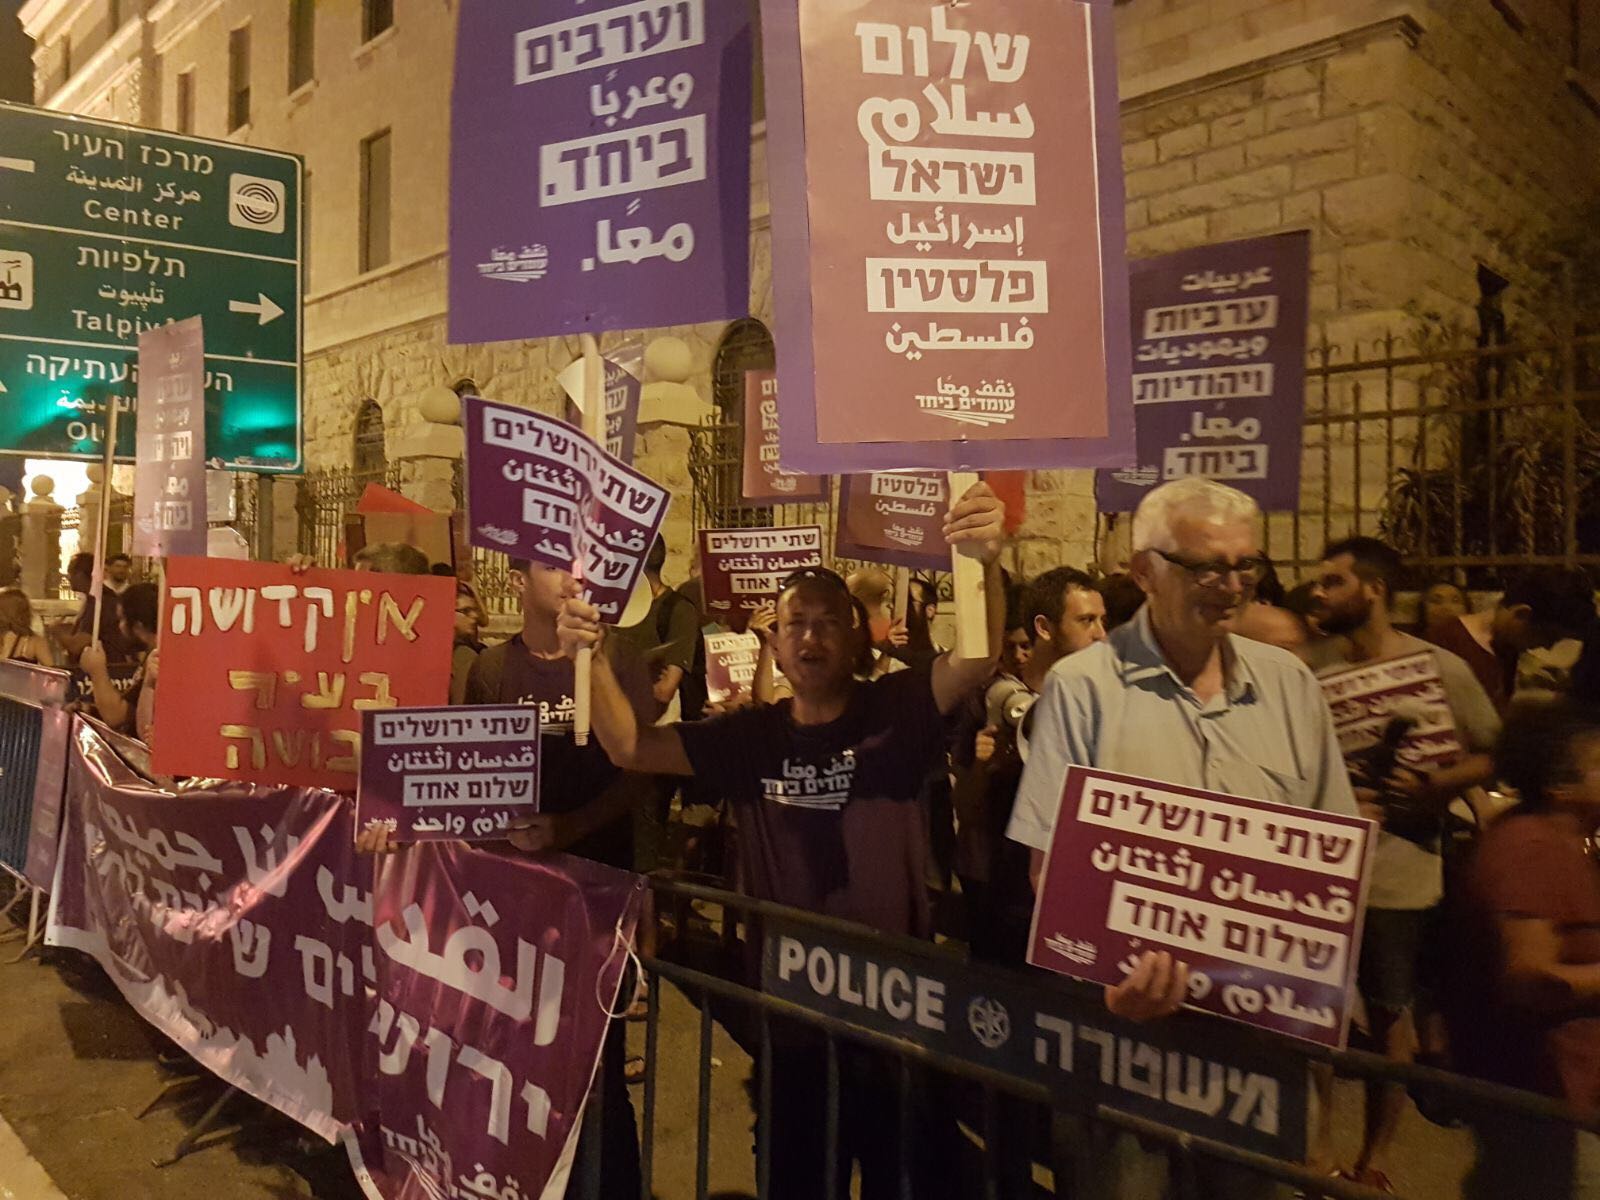 הפגנת עומדים ביחד, לוחמים לשלום ומרצ נגד ההסלמה בירושלים (צילום: עומדים ביחד)